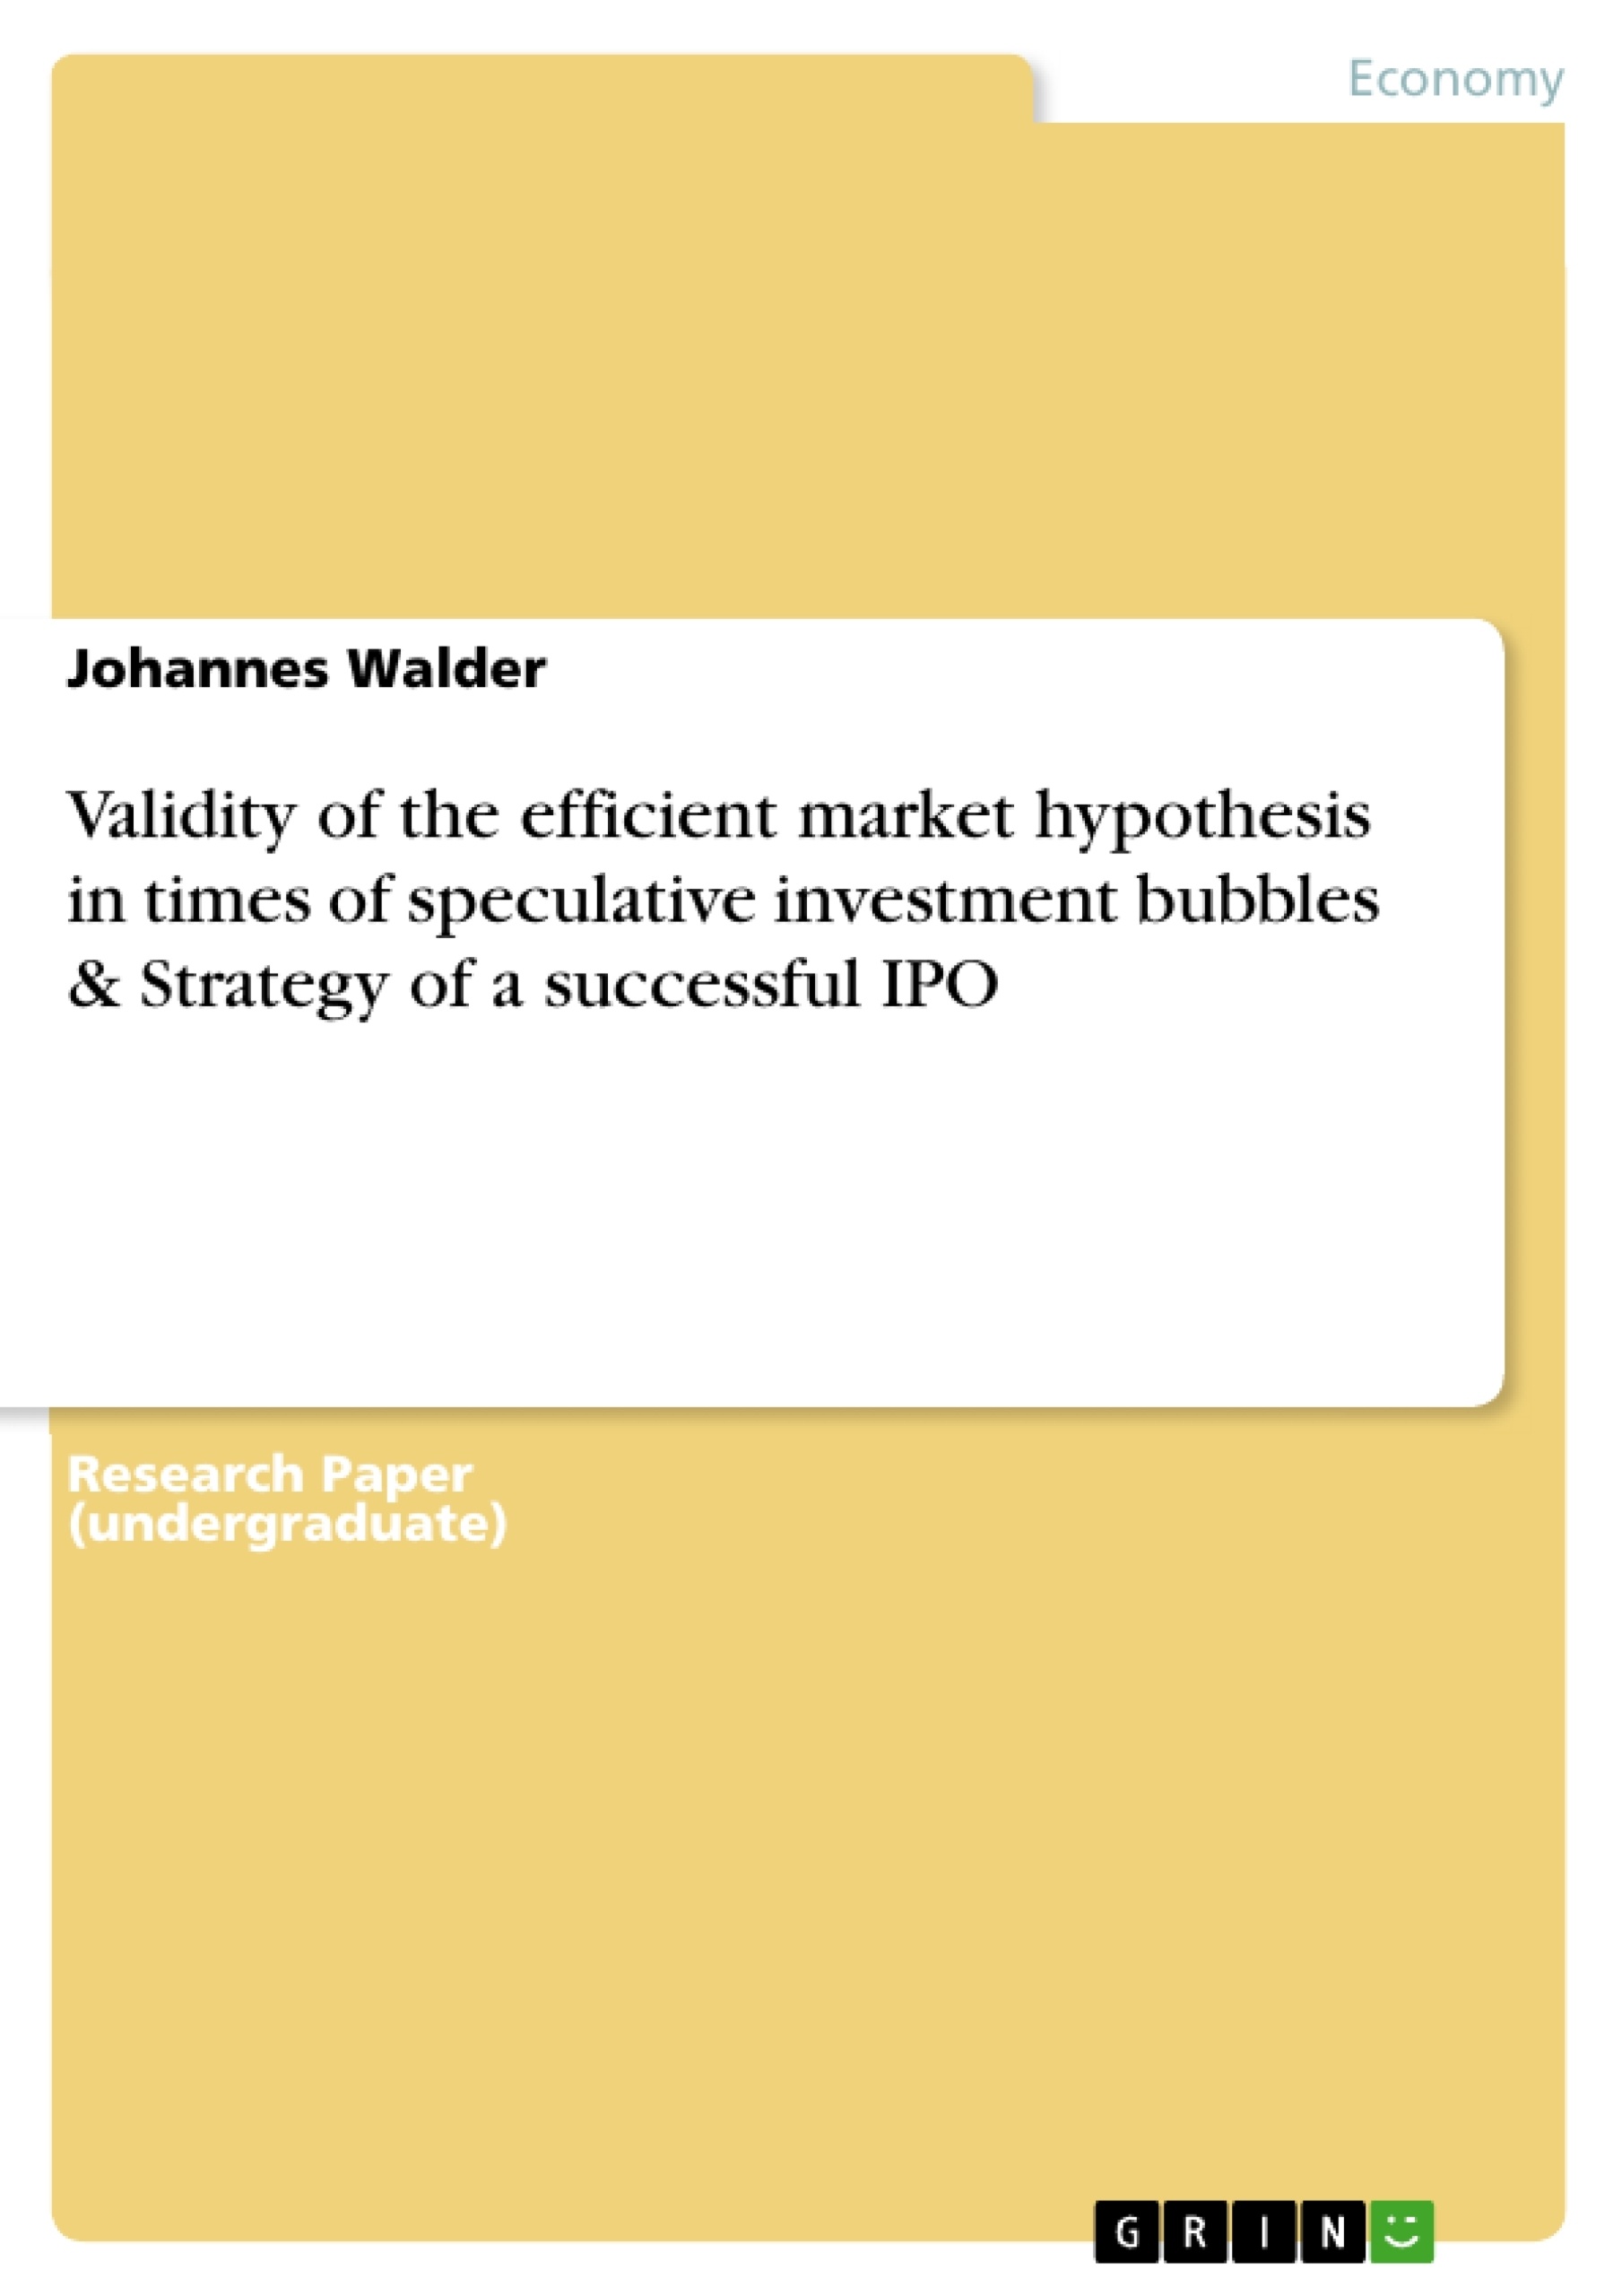 Efficient market hypothesis research paper